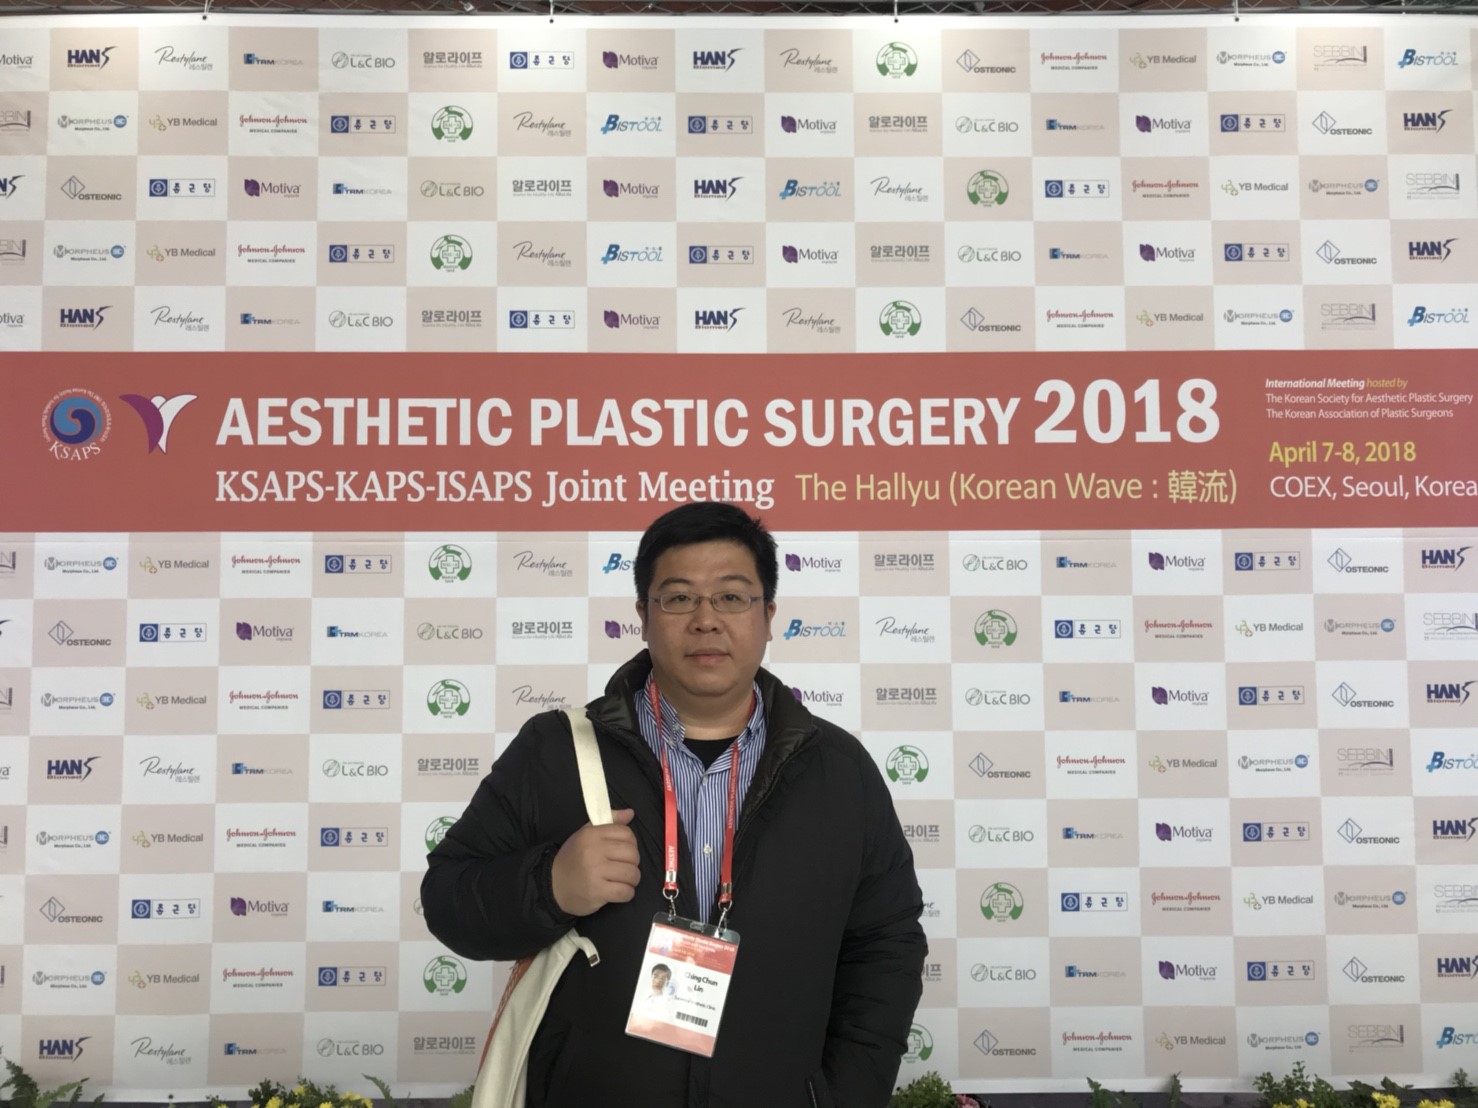 林敬鈞醫師參加2018 APS 韓國美容外科醫學會